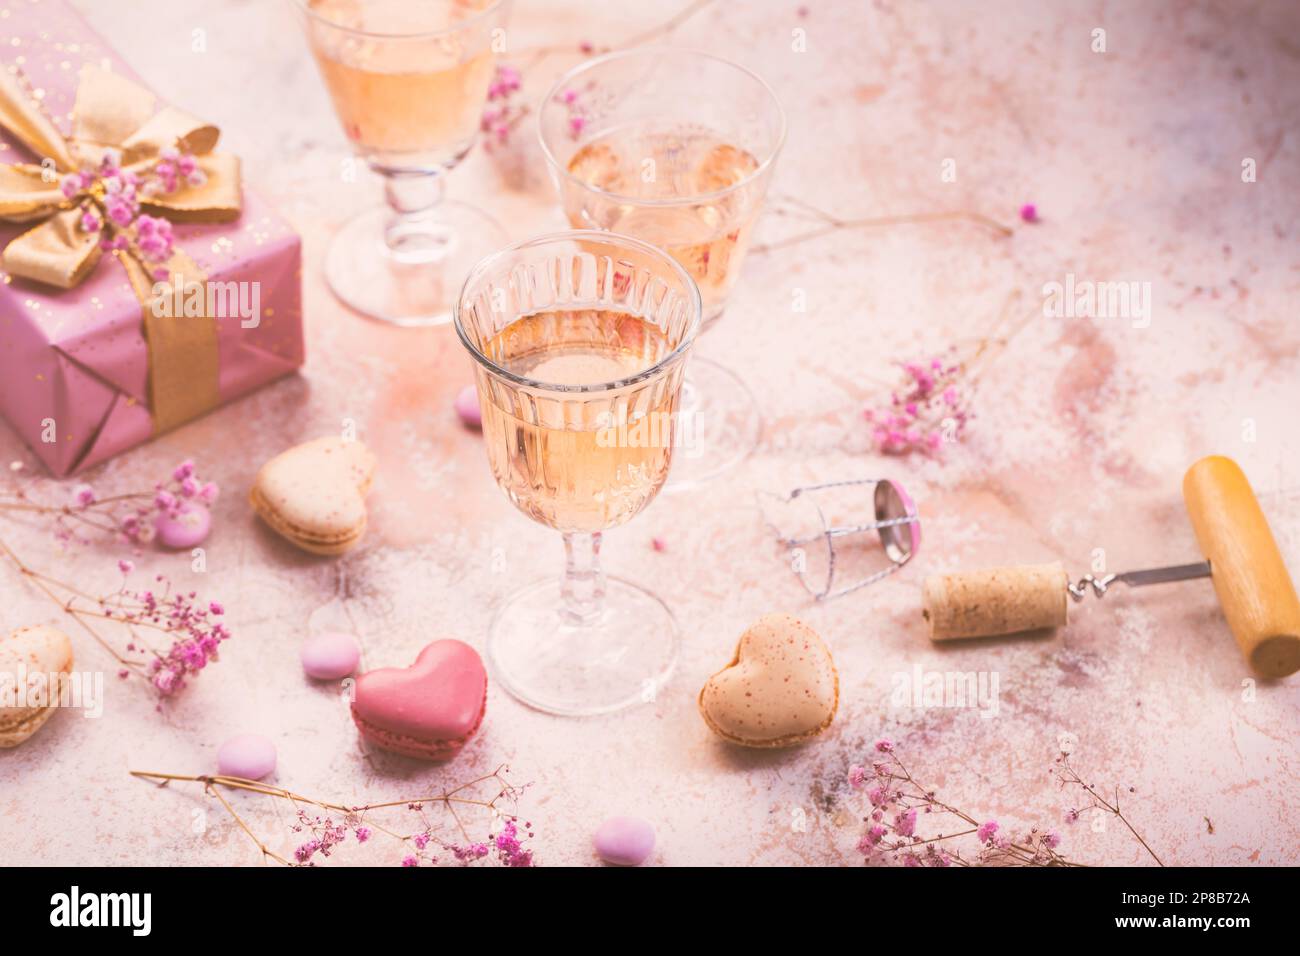 Vino frizzante alle rose, macaron francesi e scatola di cioccolatini per San Valentino, la giornata delle mamme o il compleanno Foto Stock